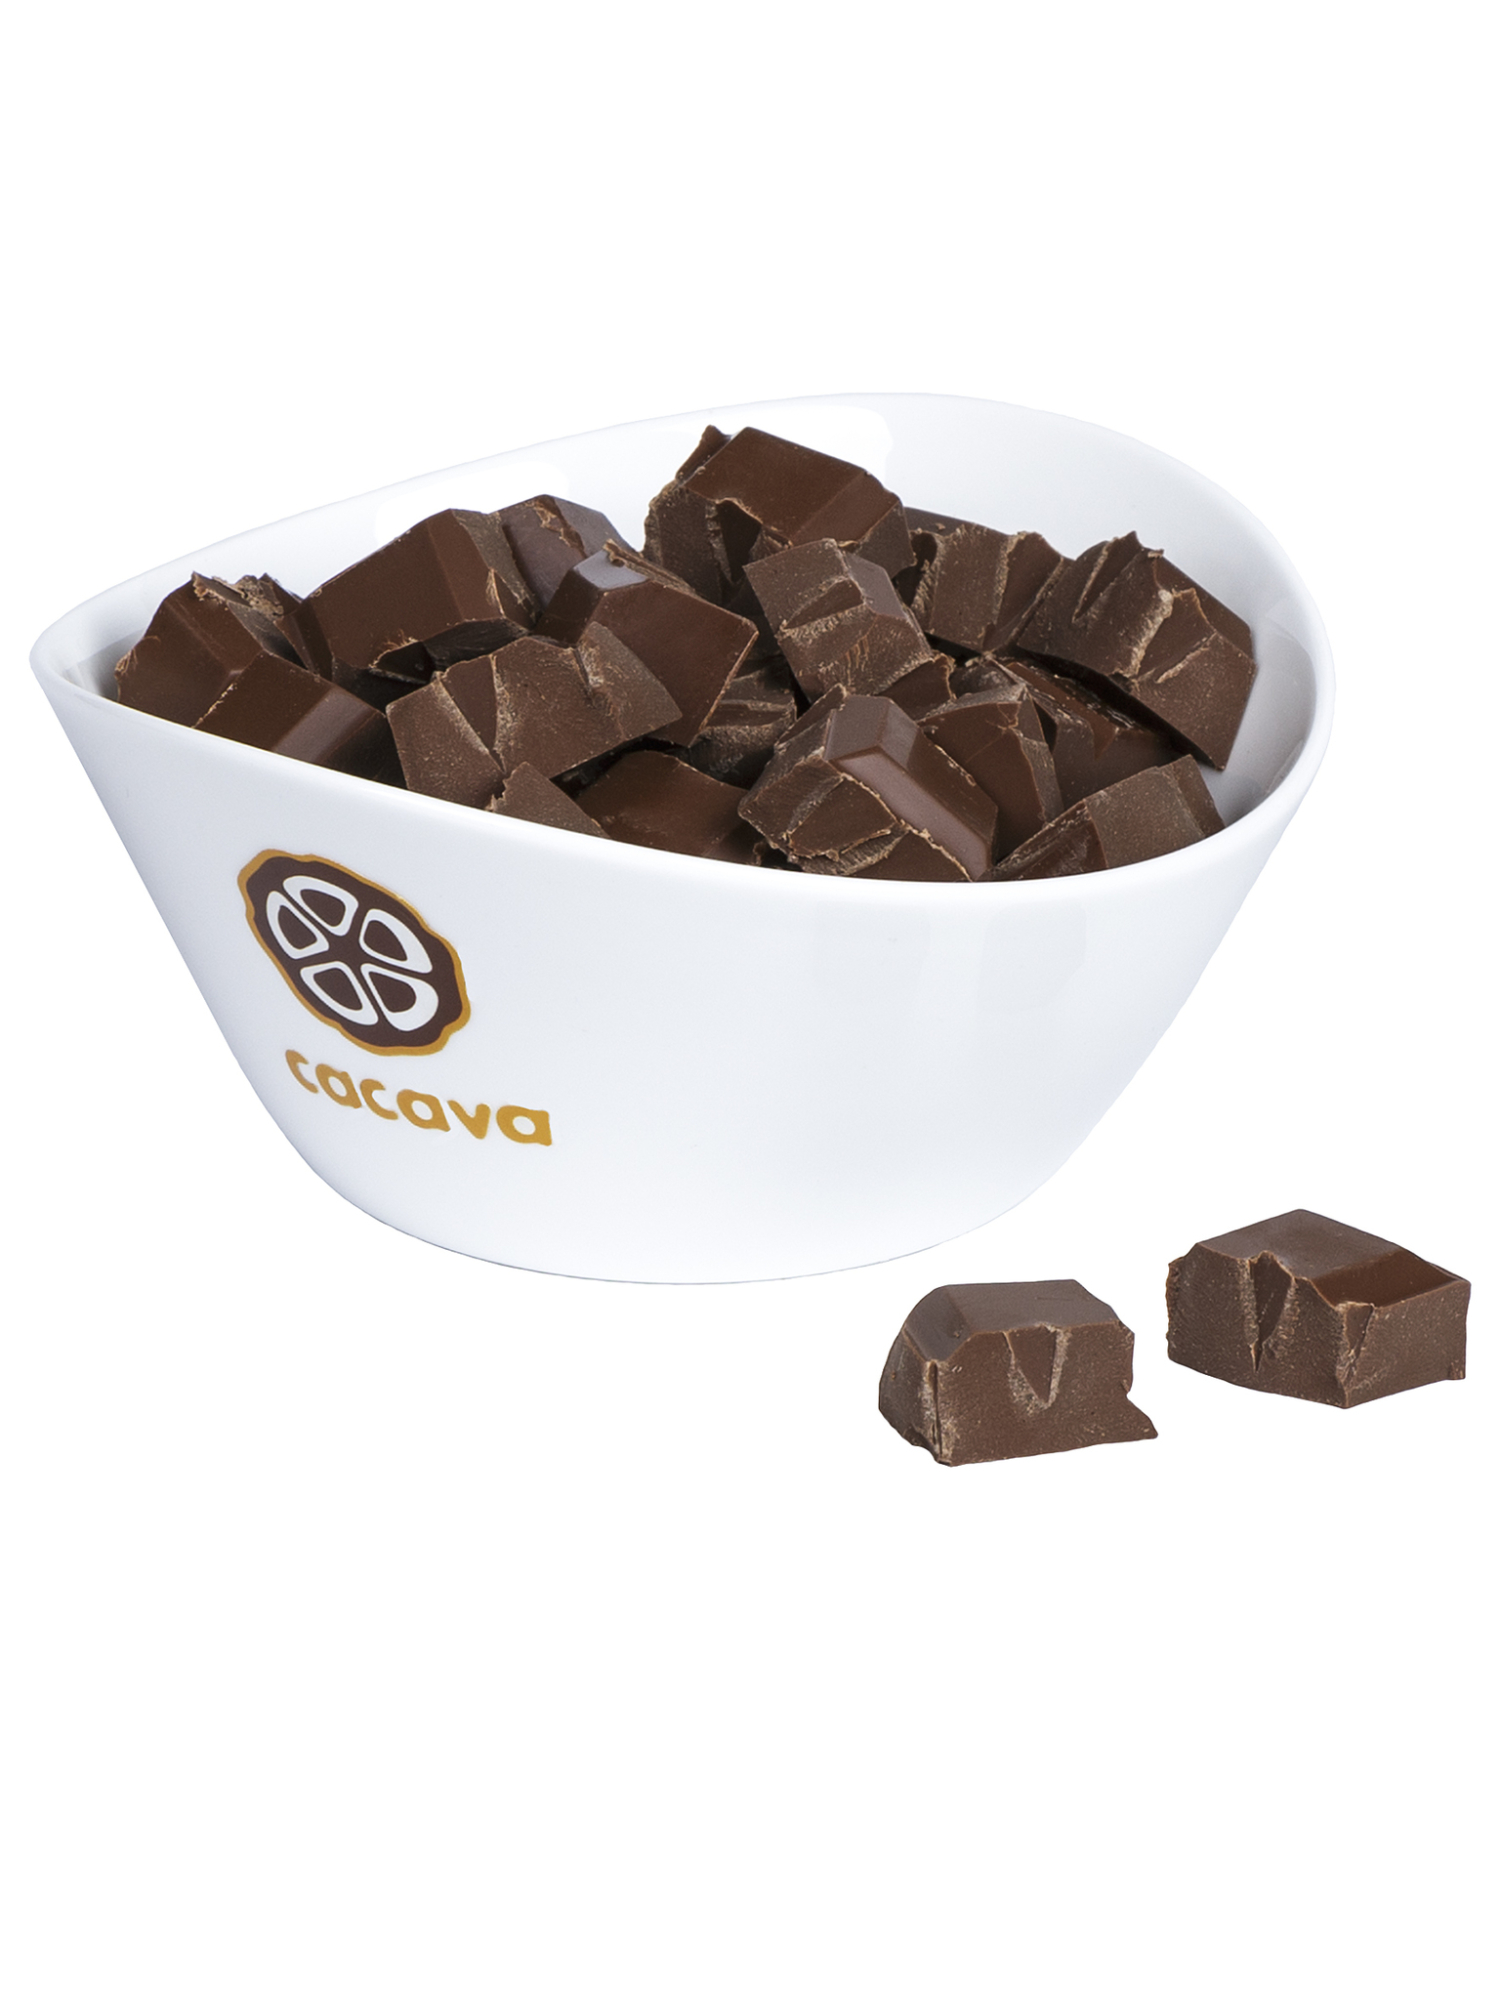 Молочный шоколад 40 % какао, на кокосовом сахаре (Индонезия), 100г купить